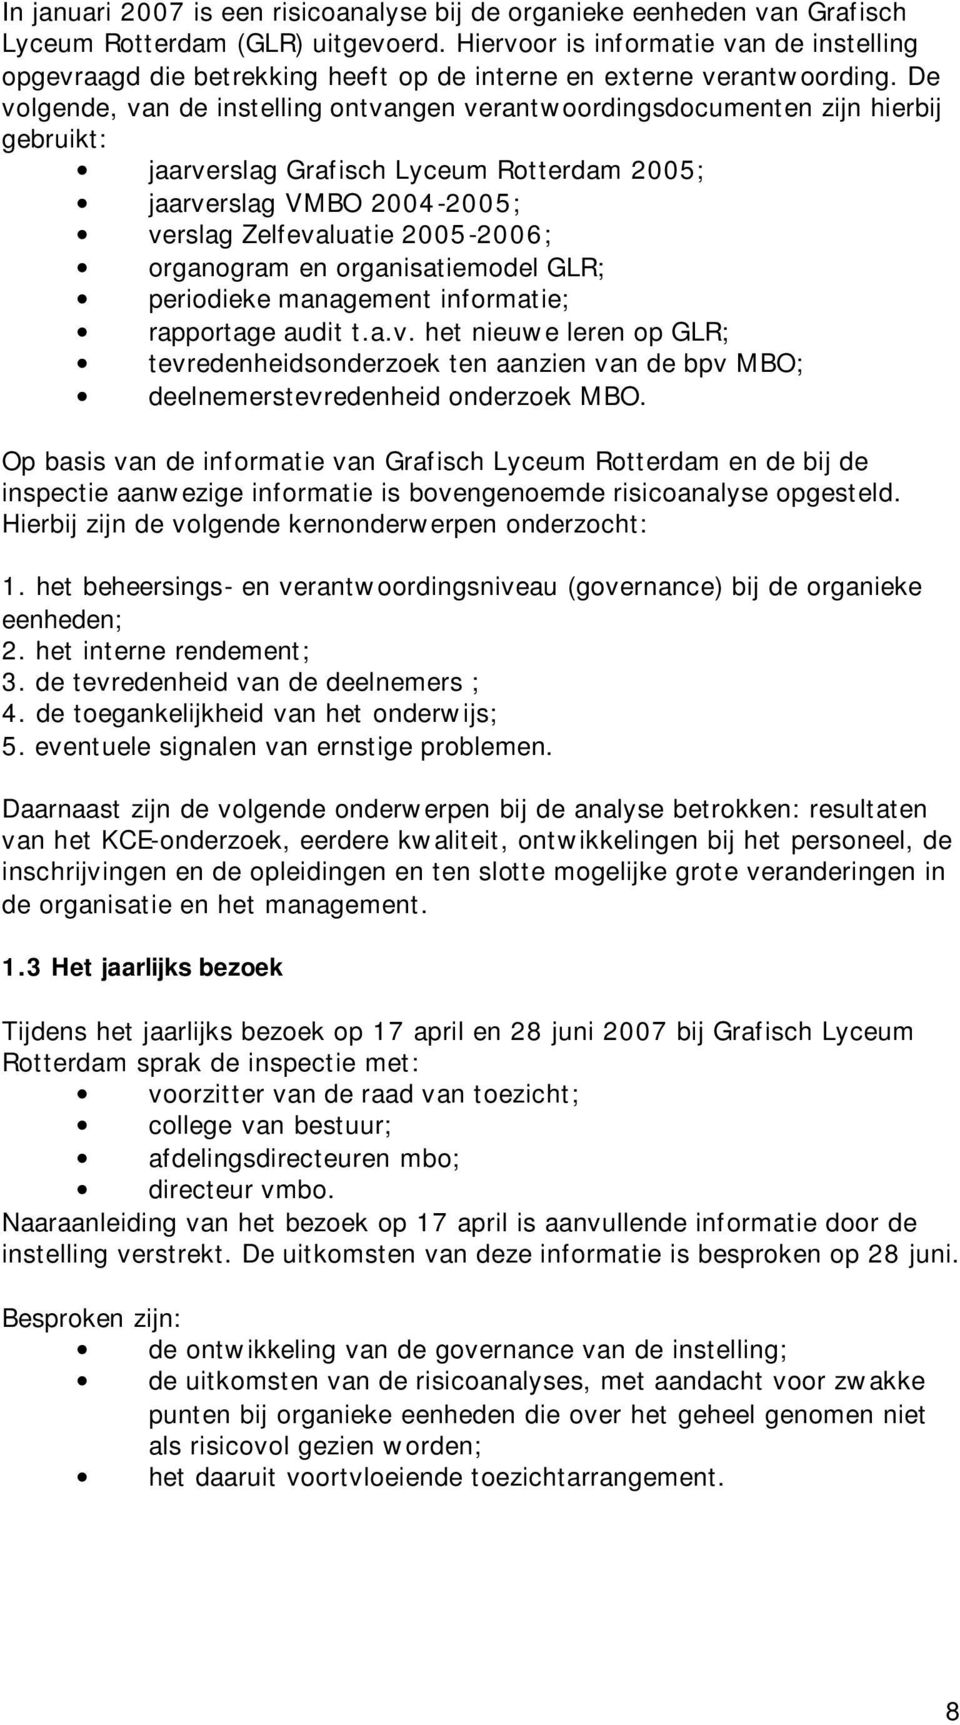 De volgende, van de instelling ontvangen verantwoordingsdocumenten zijn hierbij gebruikt: jaarverslag Grafisch Lyceum Rotterdam 2005; jaarverslag VMBO 2004-2005; verslag Zelfevaluatie 2005-2006;